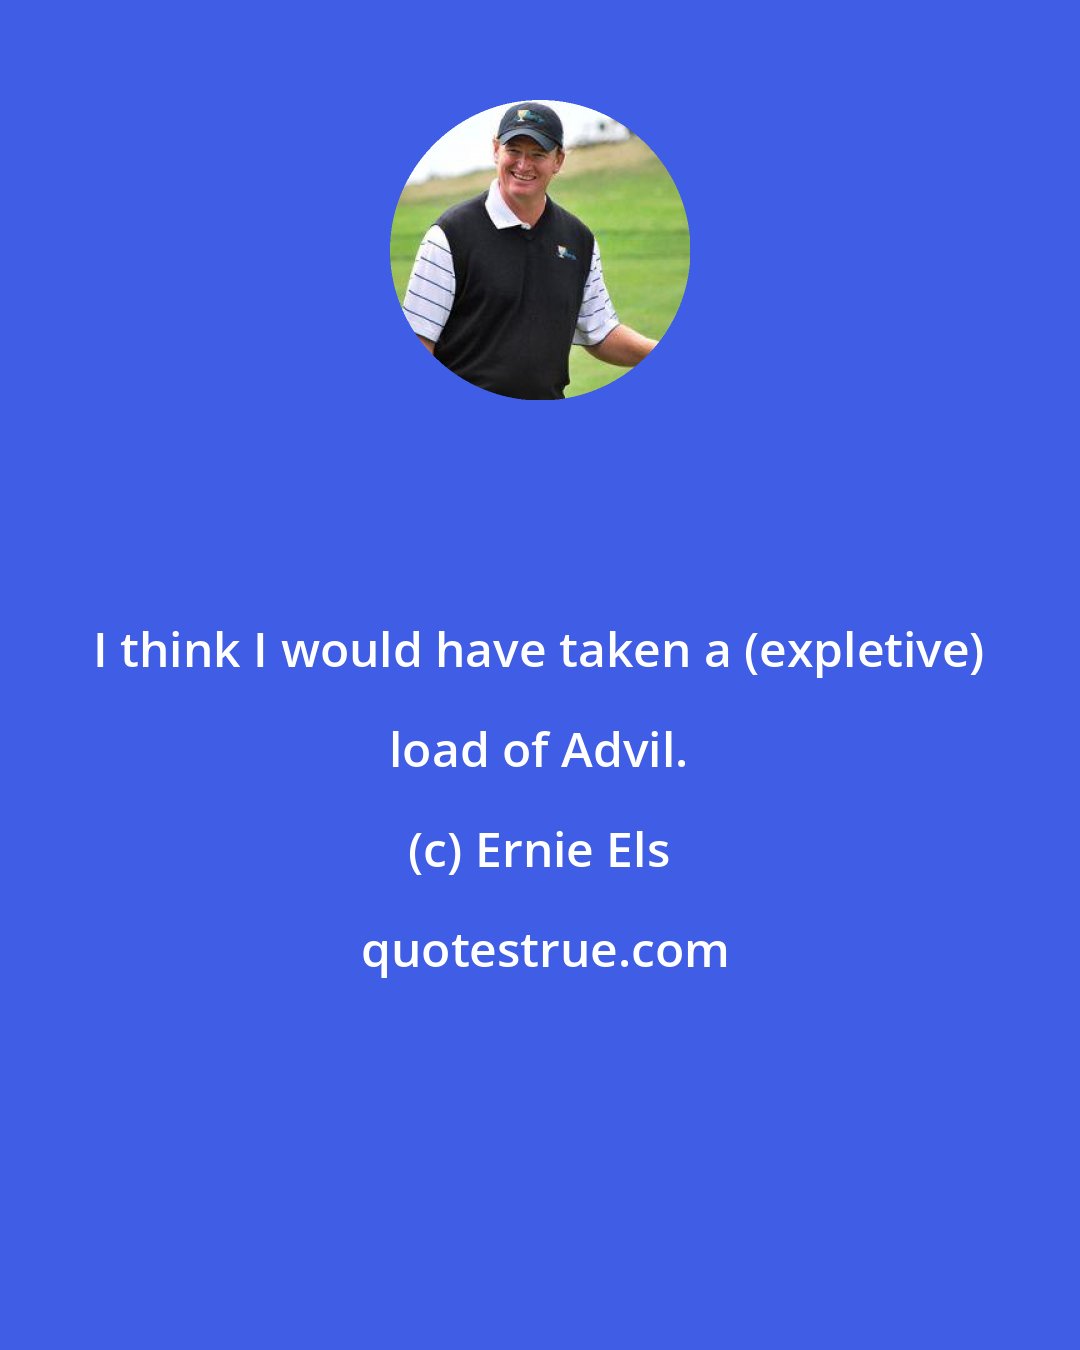 Ernie Els: I think I would have taken a (expletive) load of Advil.